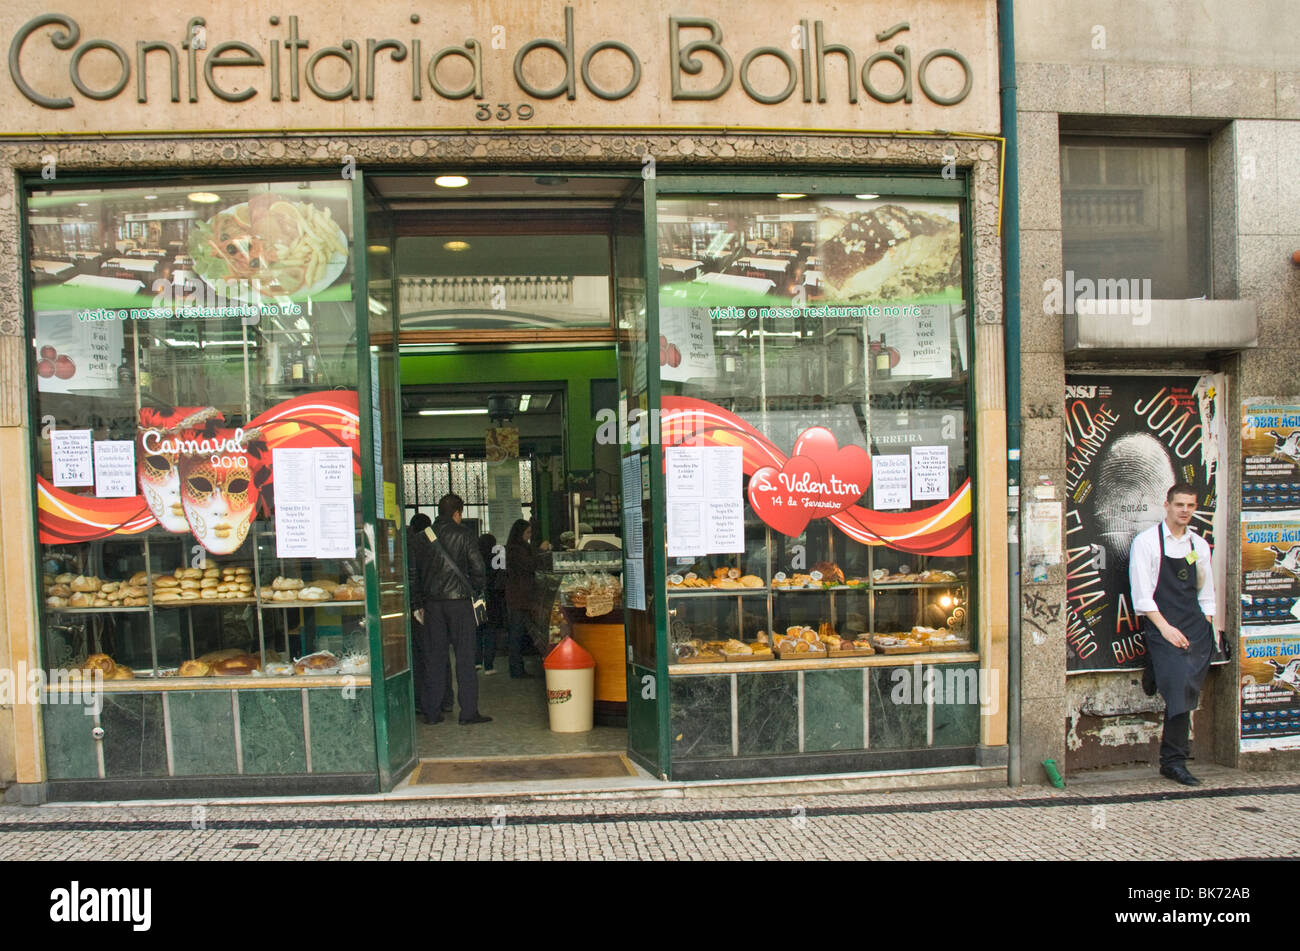 Confeitaria do Bolhão, Porto, Portugal, Europe Stock Photo - Alamy